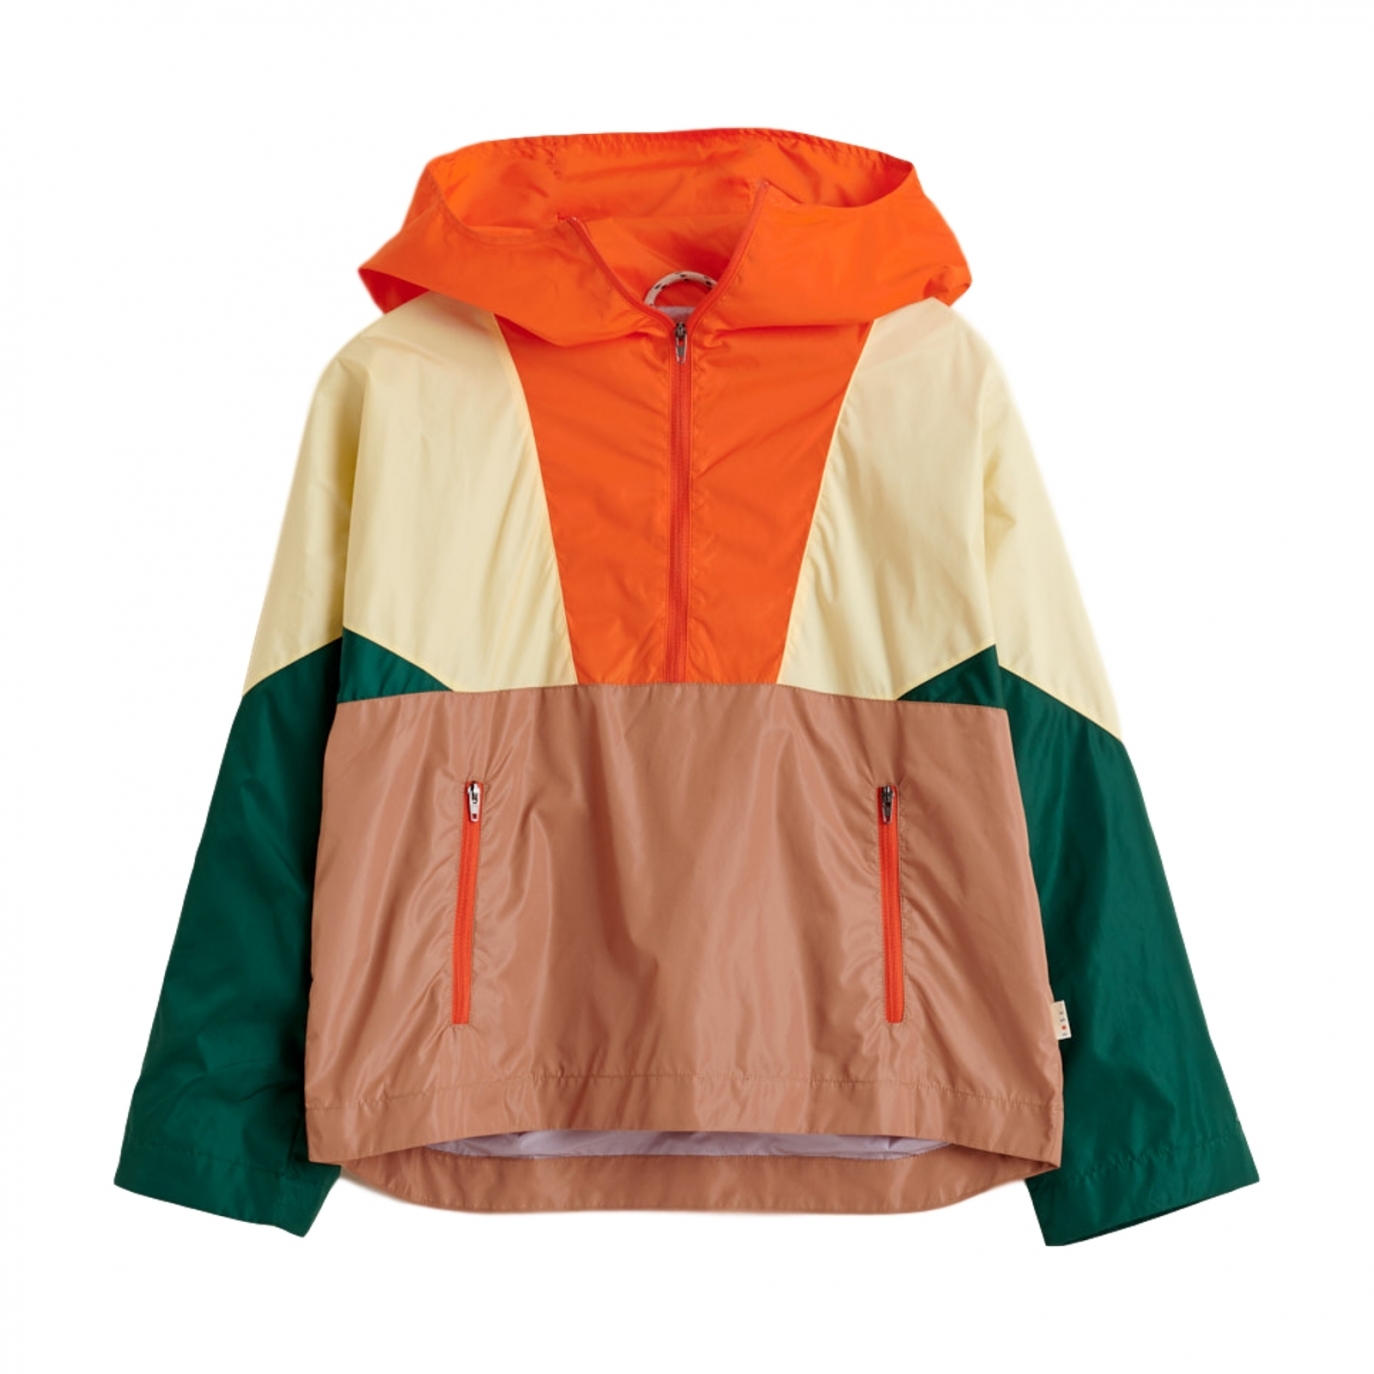 Bellerose - Куртка с капюшоном оранжевая - Пальто, куртки и комбинезоны - BK201503 P1135